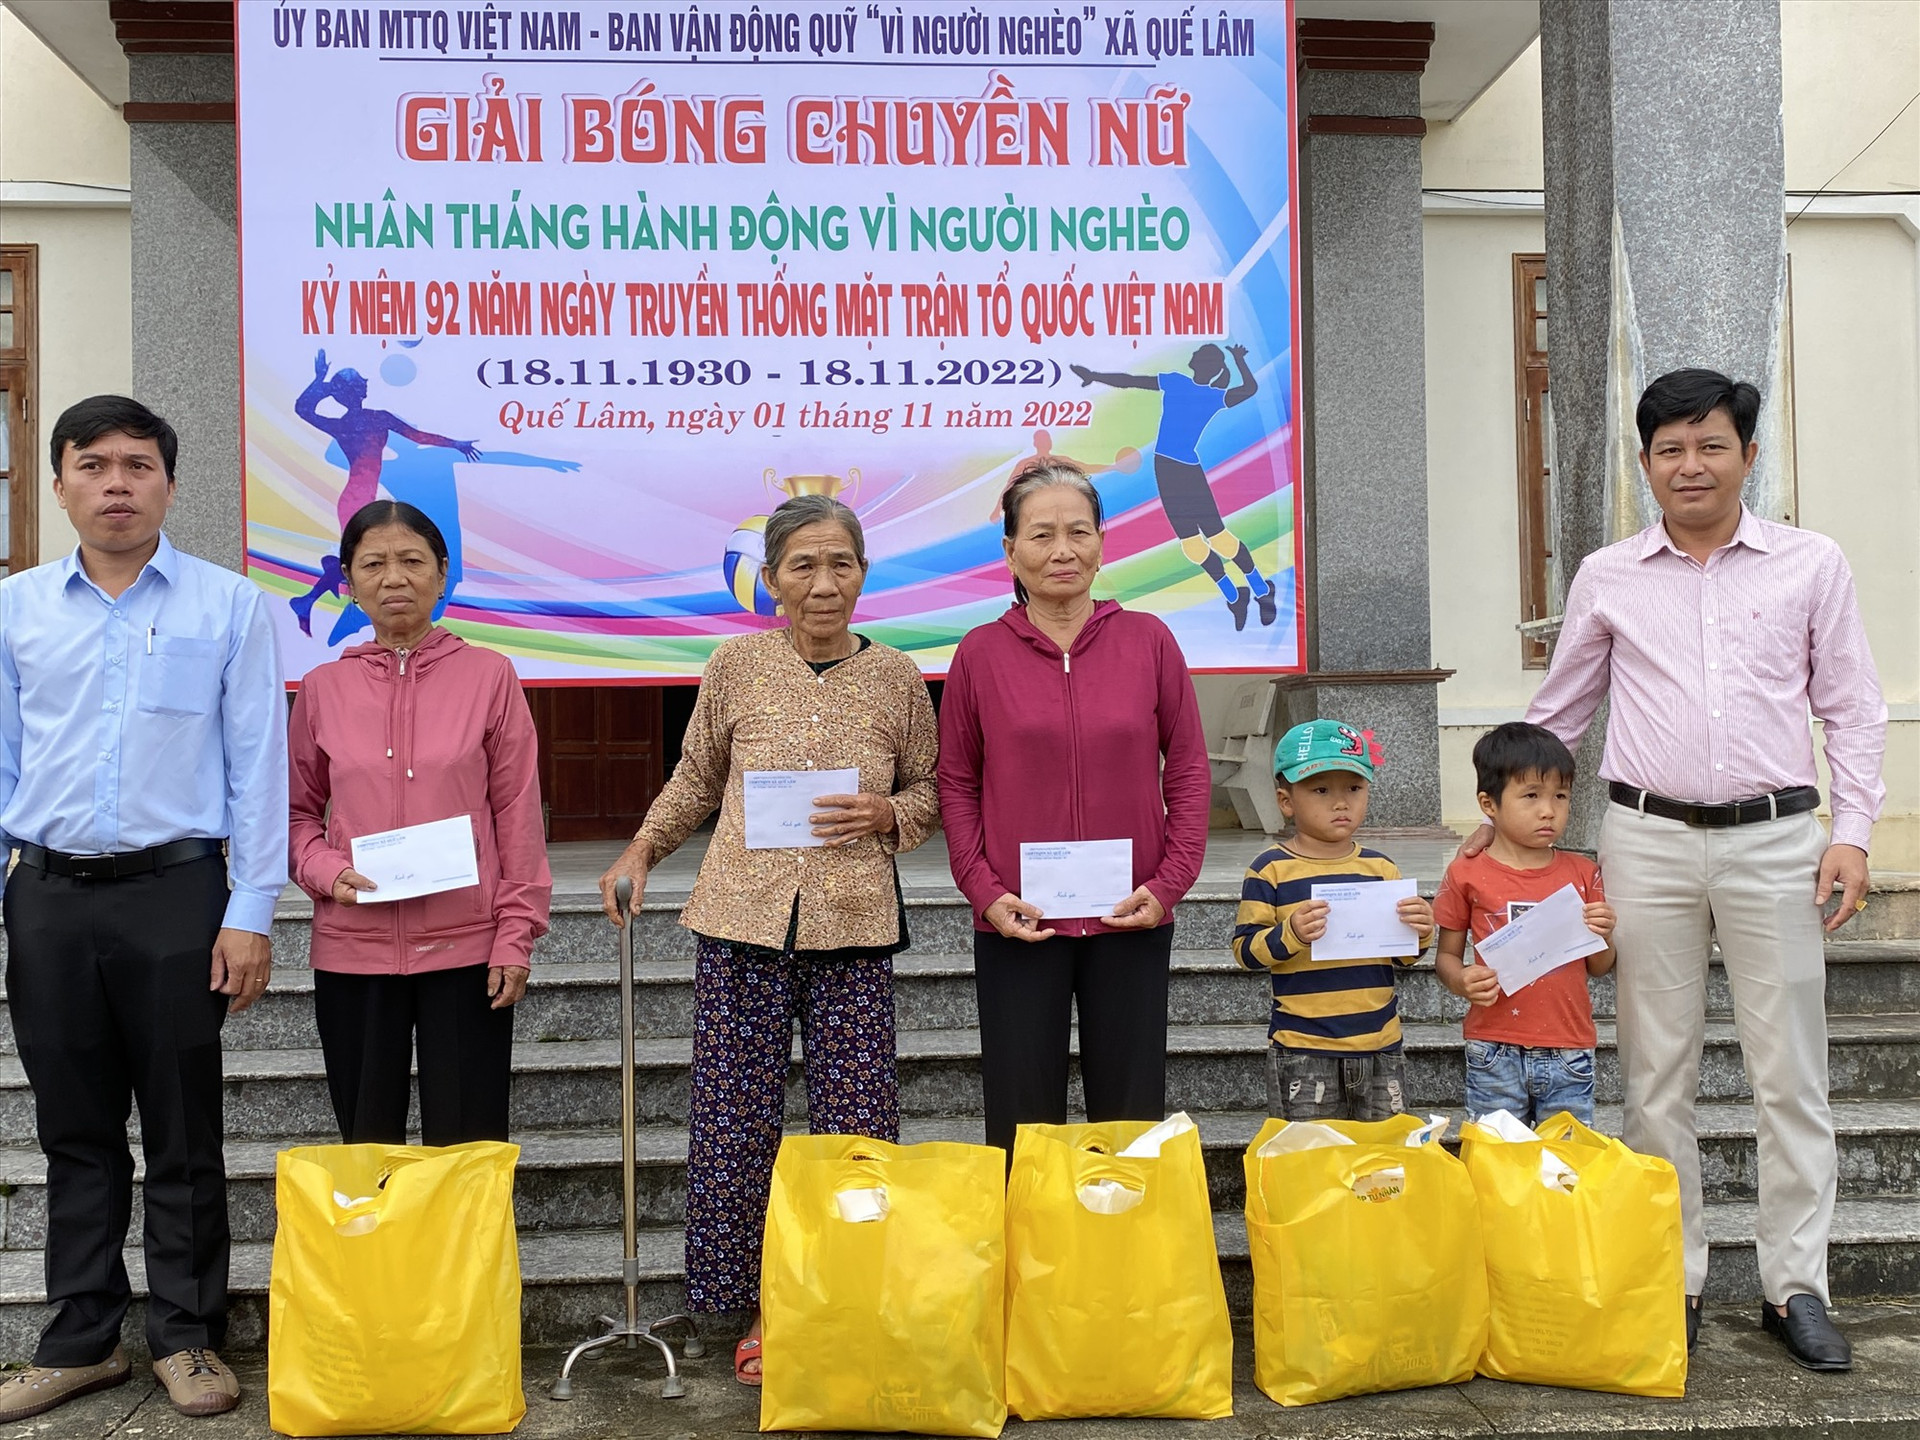 Uỷ ban MTTQ Việt Nam xã Quế Lâm trao tặng quà cho người nghèo. Ảnh: N.P